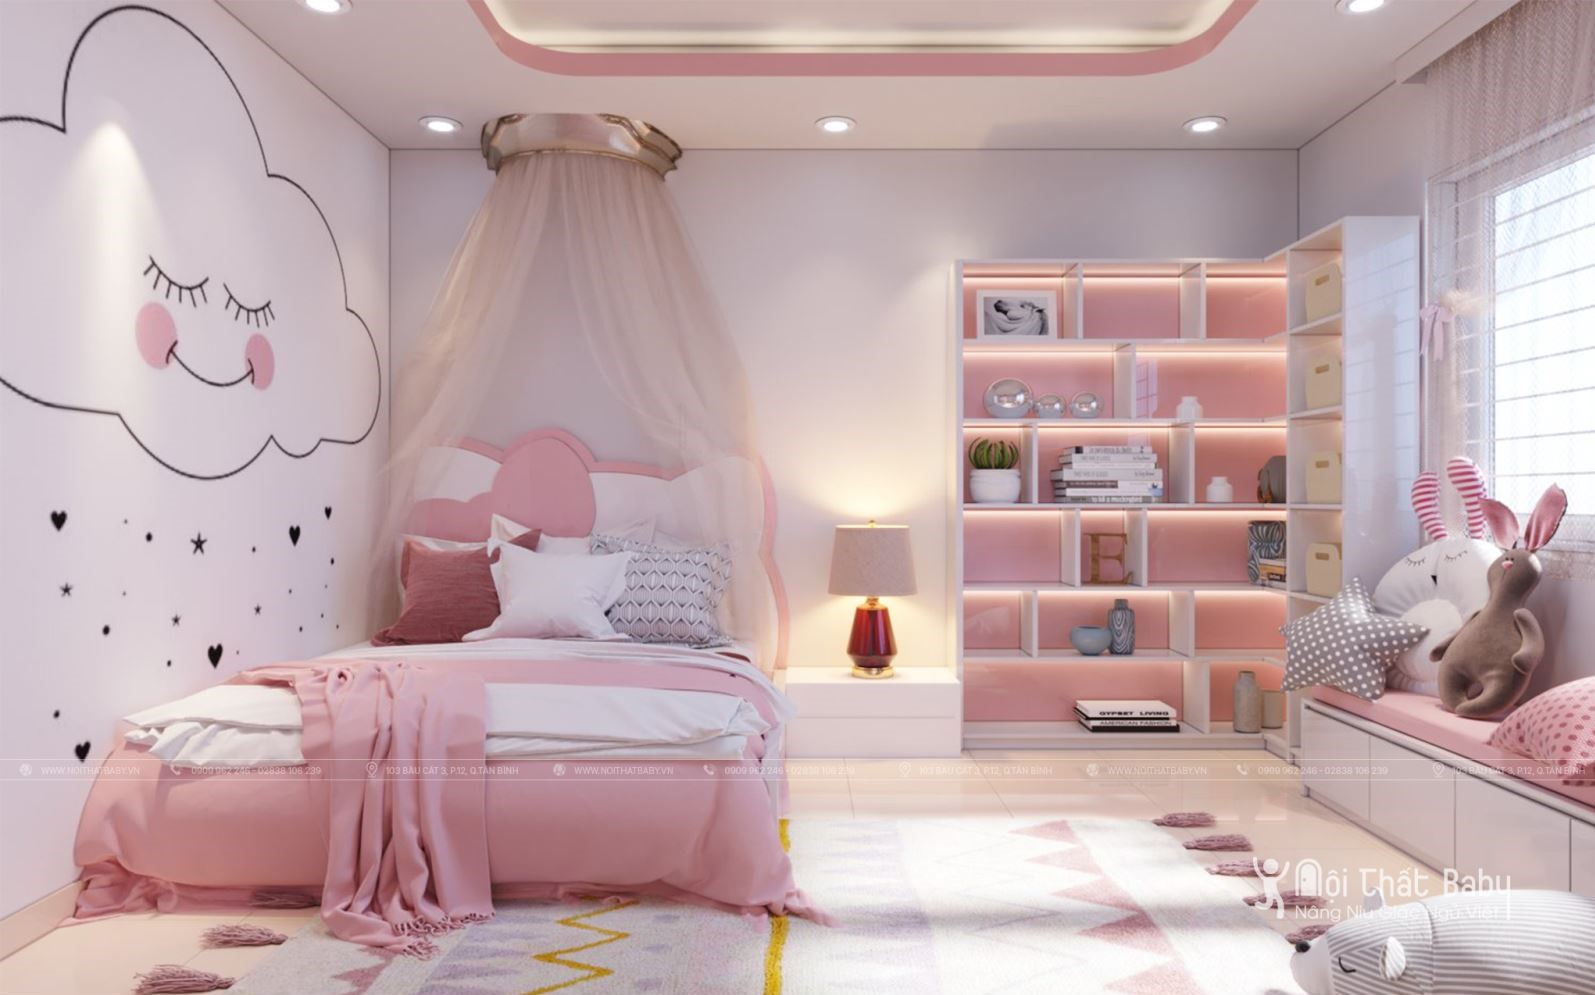 Top 27 mẫu giường ngủ đẹp nhất năm 2020 dành cho bé gái